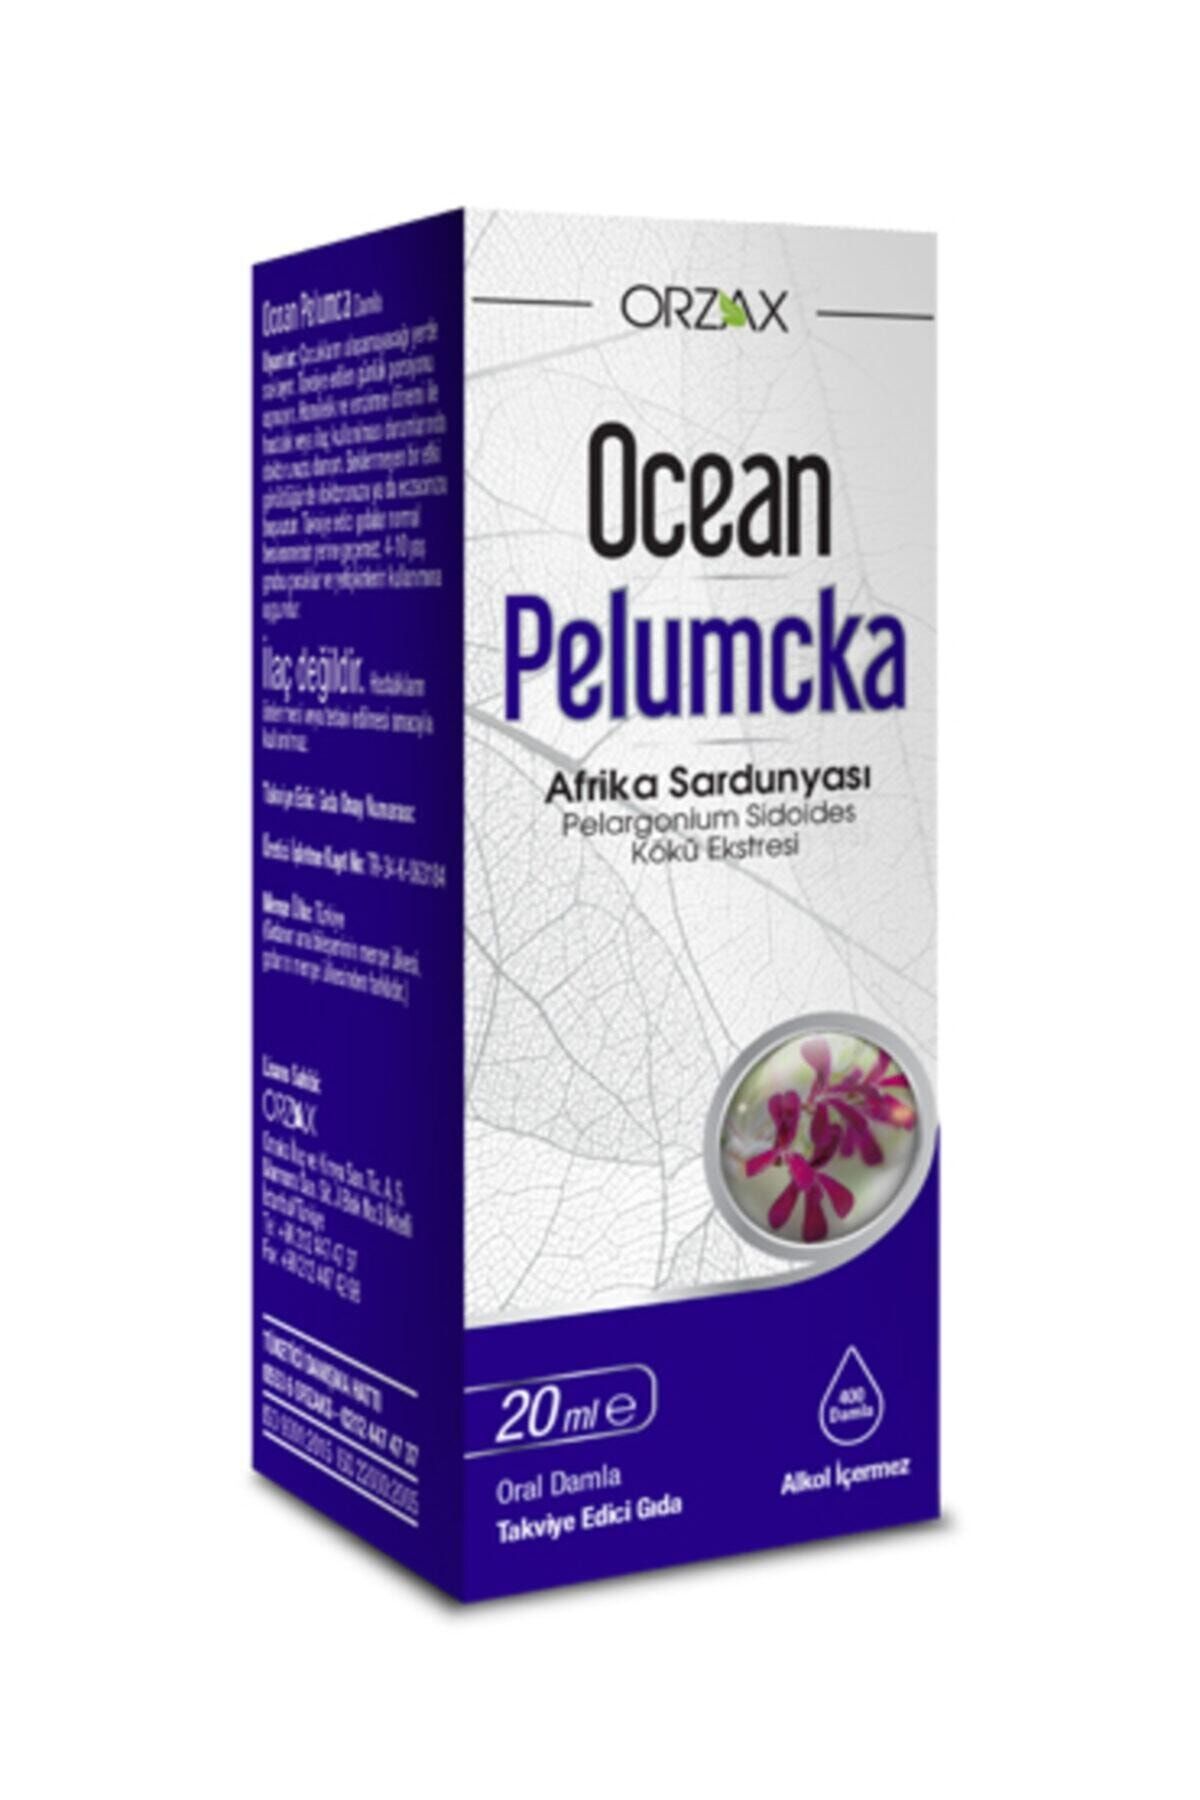 Ocean Pelumcka Oral Damla 20 ml